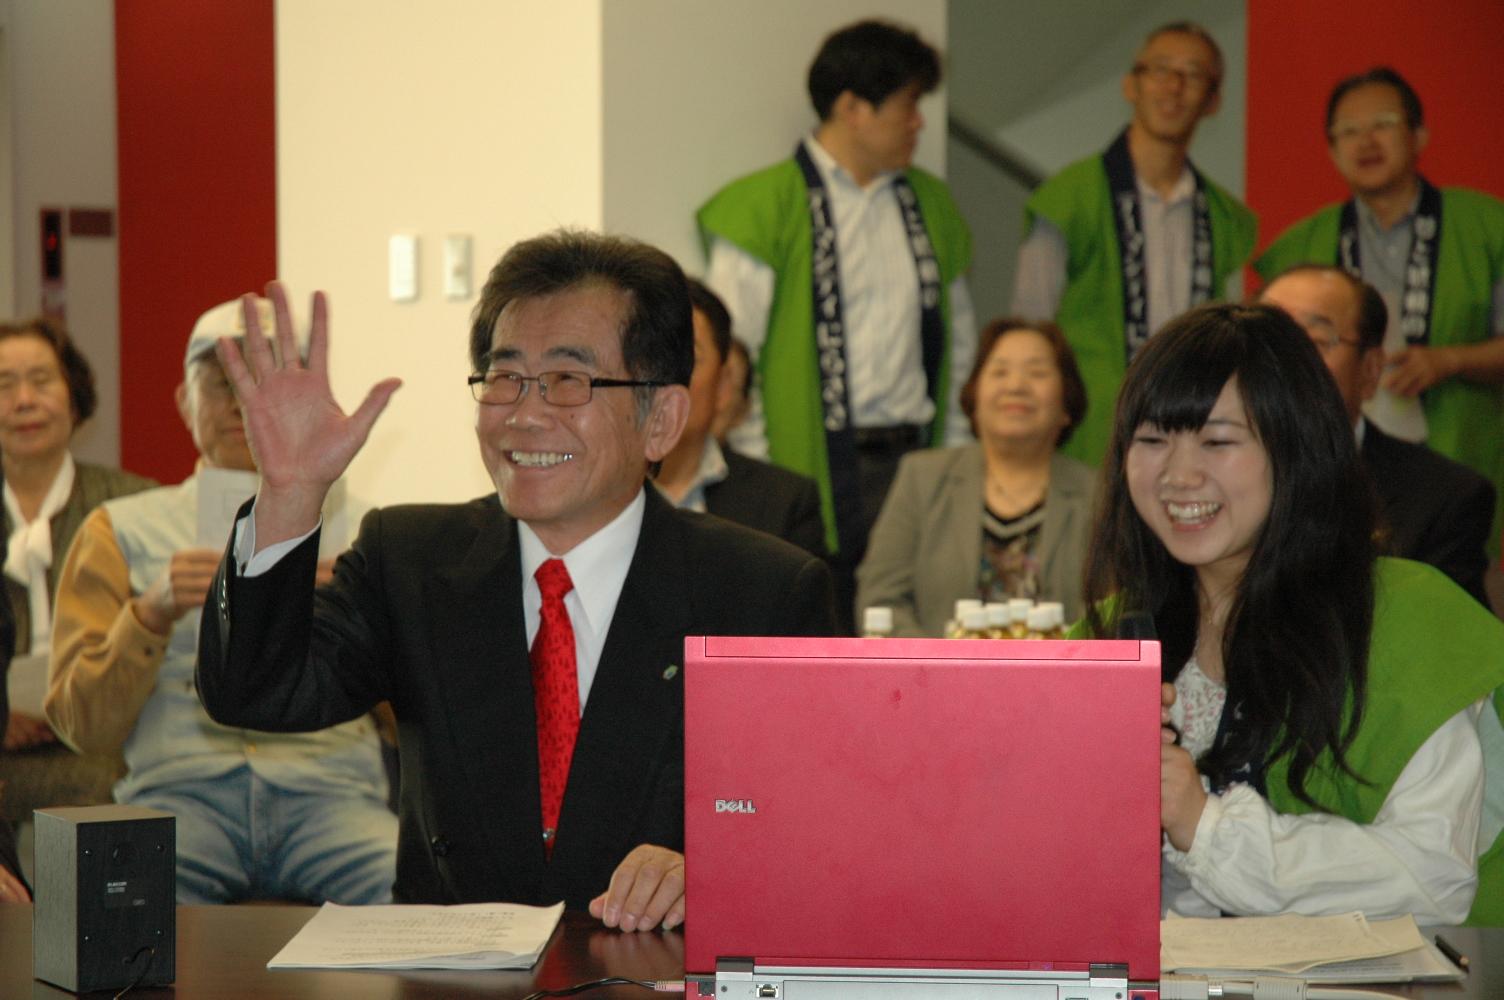 ノートパソコンの前に座っている緑色のはっぴを着た笑顔の女性と山寺 健二さんが笑顔で手を振っている写真